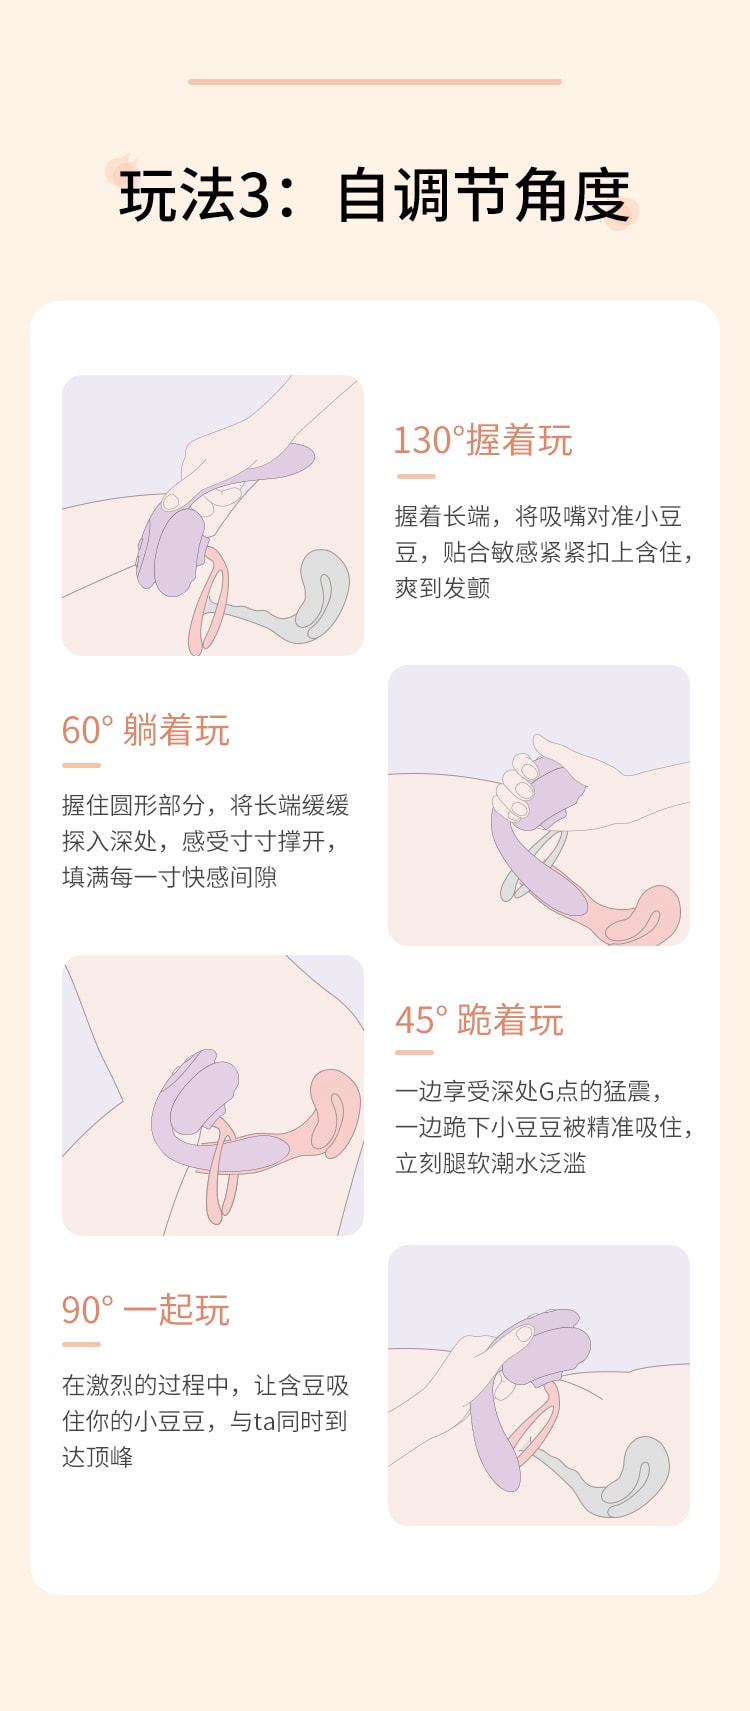 中国 Mesanel享要含豆振动震动棒女性成人用品自慰器女情趣玩具秒潮高潮性用具 豆沙紫 1件